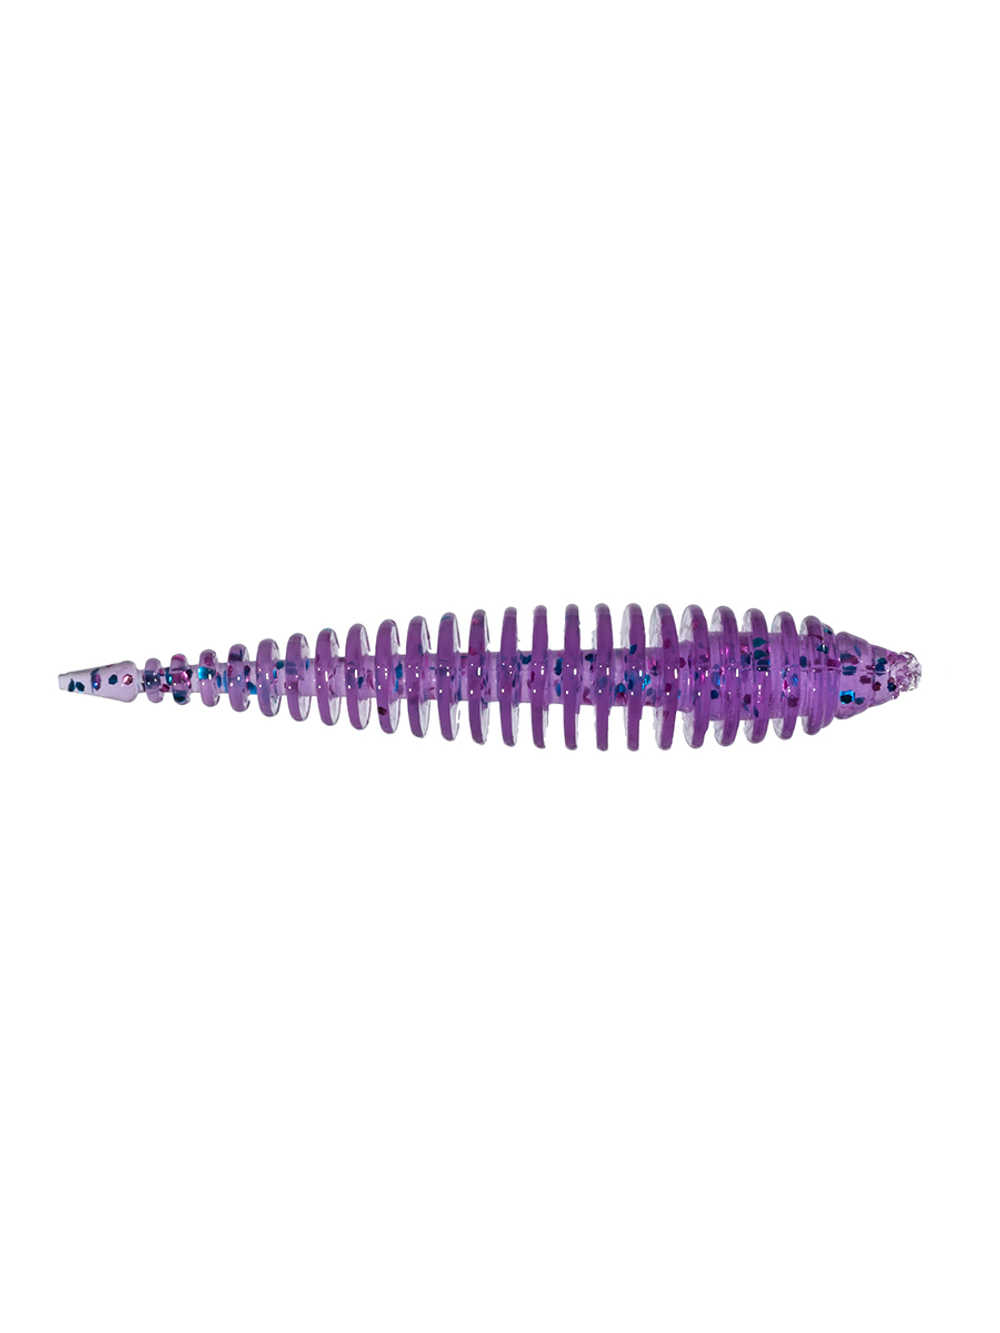 Приманка ZUB-MAGGOT SLIM 40мм-12шт, (цвет 610) фиолетовый с блестками